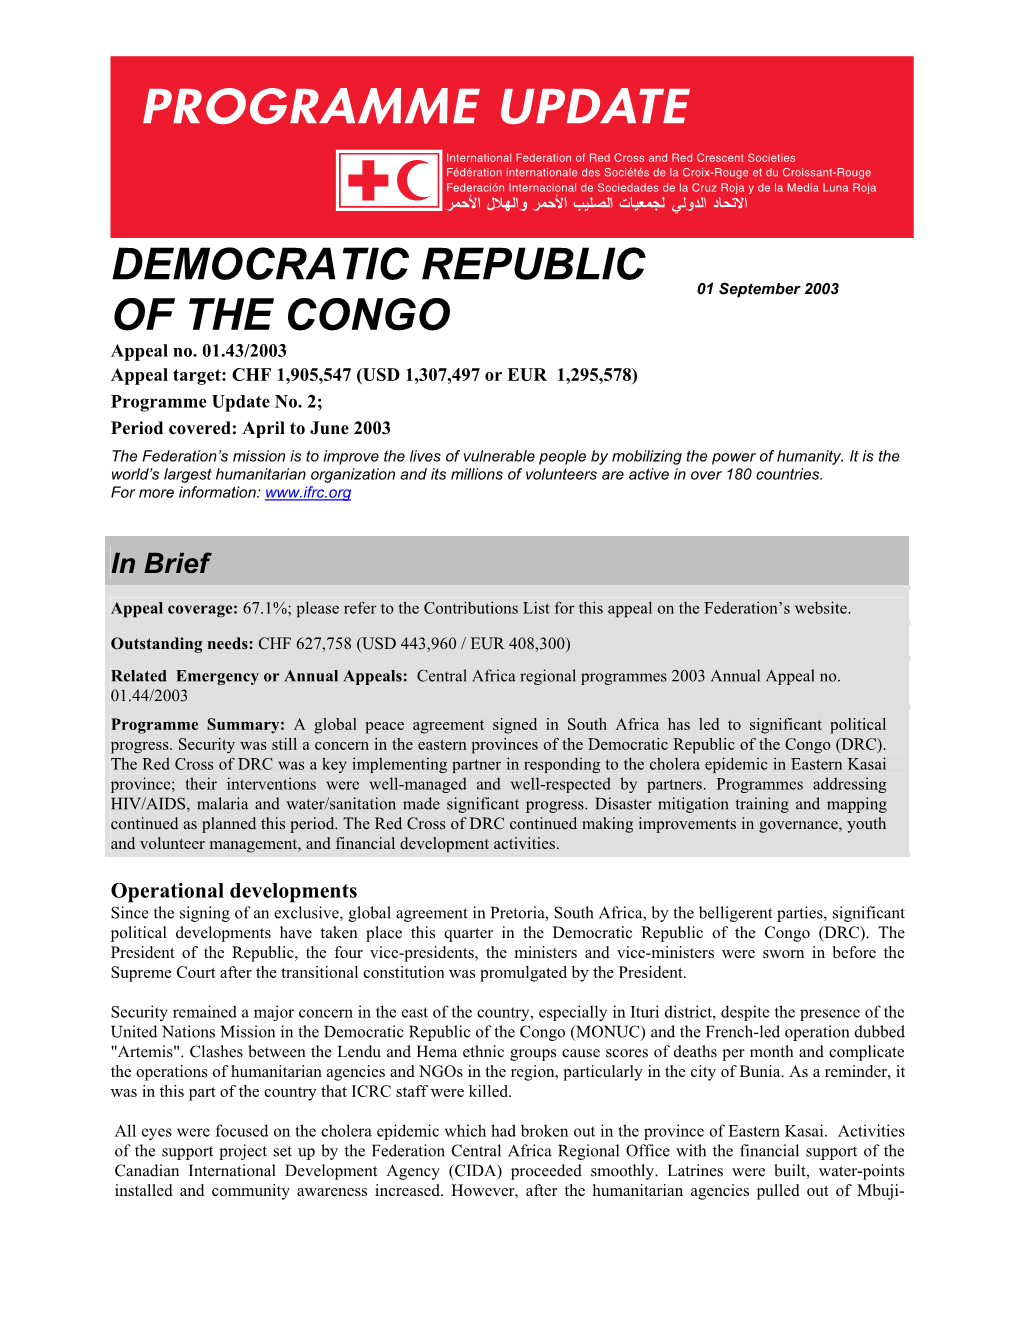 Democratic Republic of Congo ANNEX 1